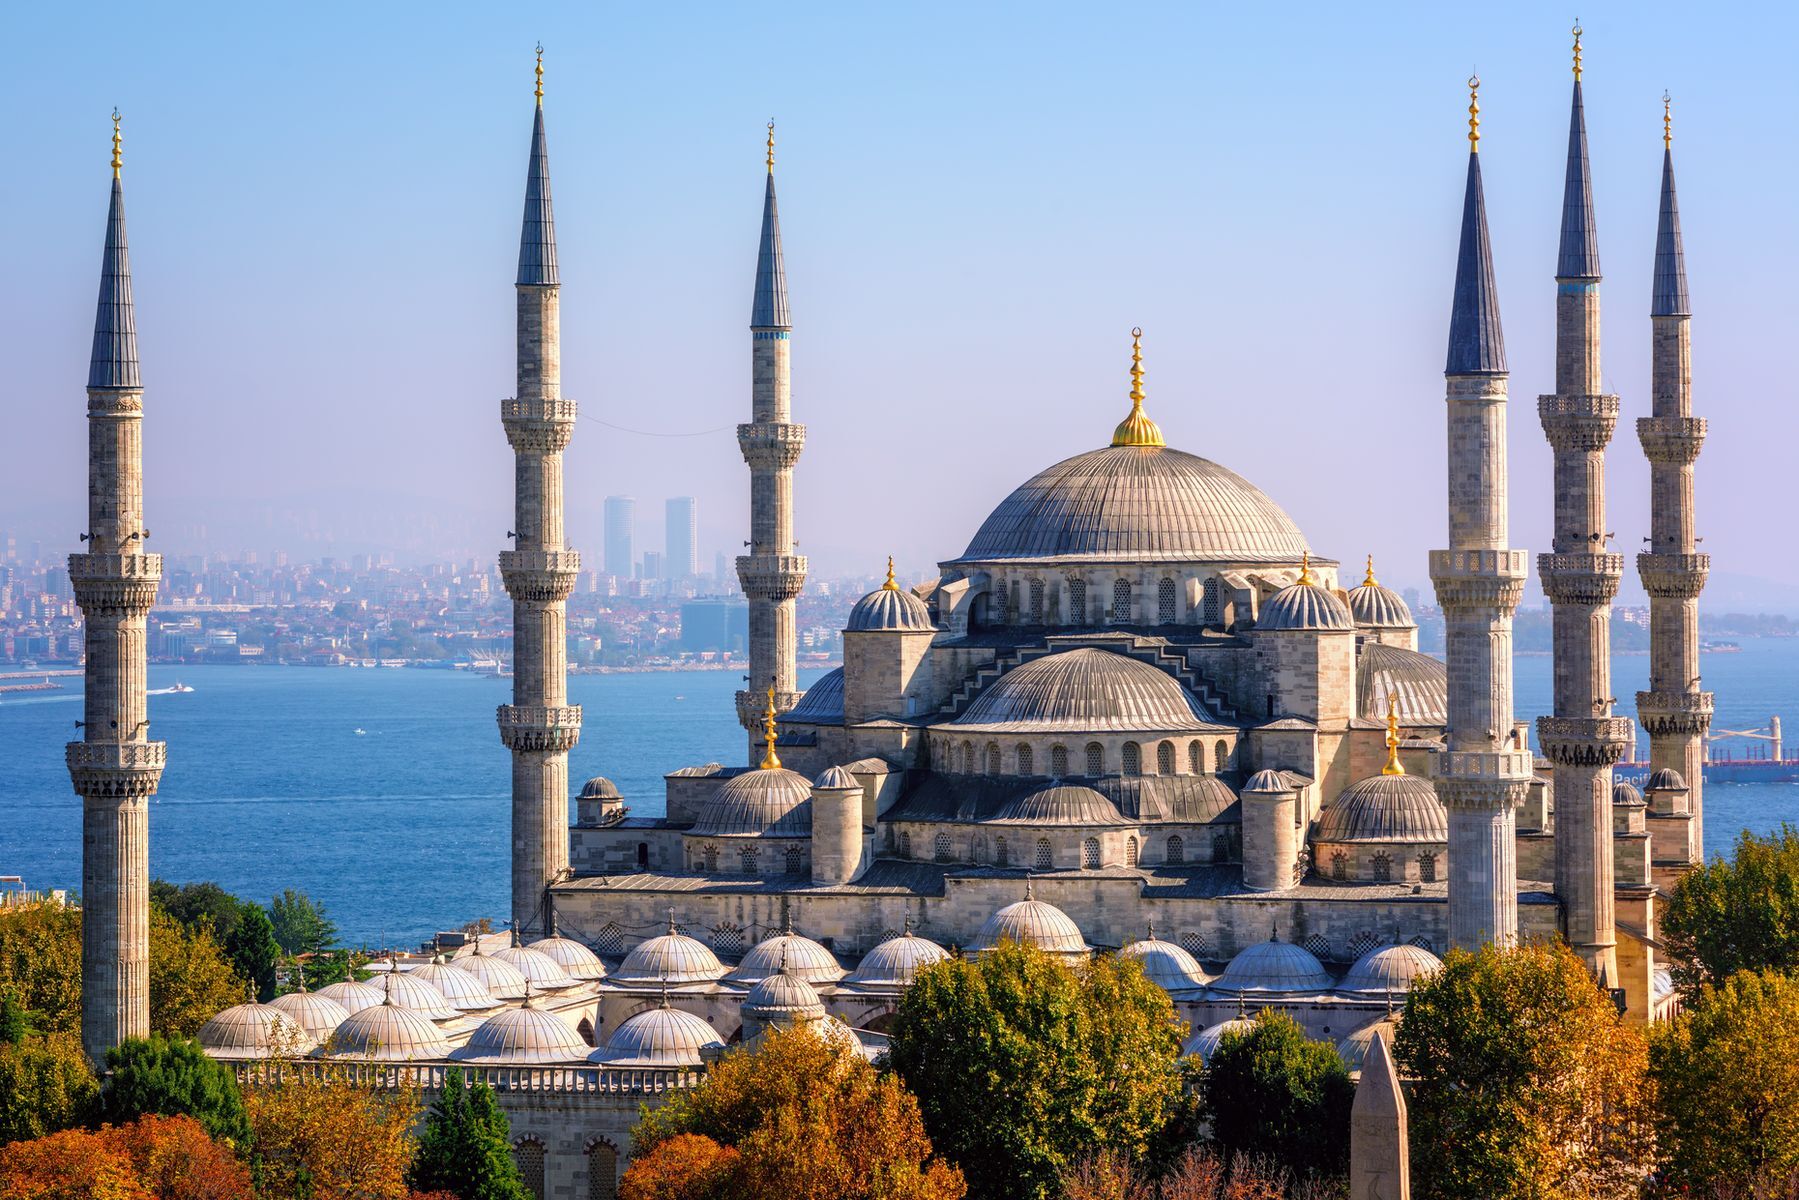 <p>À cheval entre l’Europe et l’Asie, <a href="https://fr.hotels.com/go/turkey/free-things-to-do-istanbul">Istanbul</a> possède une riche histoire, la ville ayant servi de capitale aux Empires byzantin et ottoman. On reconnaît souvent la cité par sa <a href="http://www.istanbul-city.fr/guide-istanbul/mosquee/mosquee-bleue/">Mosquée bleue</a>, ou Mosquée de Sultanahmet, un arrêt incontournable qu’il est possible de visiter librement, hormis durant les moments de prière. À proximité, vous pourrez déguster sans vous ruiner des izgara köftes (des boulettes de viande grillées) au restaurant <a href="https://sultanahmetkoftesi.com/">Tarihi Sultanahmet Köftecisi</a>. Le <a href="https://istanbul.goturkiye.com/fr/istanbul-archaeological-museums">musée archéologique d’Istanbul</a> saura plaire aux adeptes d’histoire qui, pour <a href="https://www.istanbul.fr/musee-archeologique">50 livres turques</a> (<a href="https://exchangerate.guru/try/usd/50/">1,65 $US</a>), pourront parcourir ses 20 galeries qui regroupent des objets antiques célébrant 5000 années d’histoire.</p>